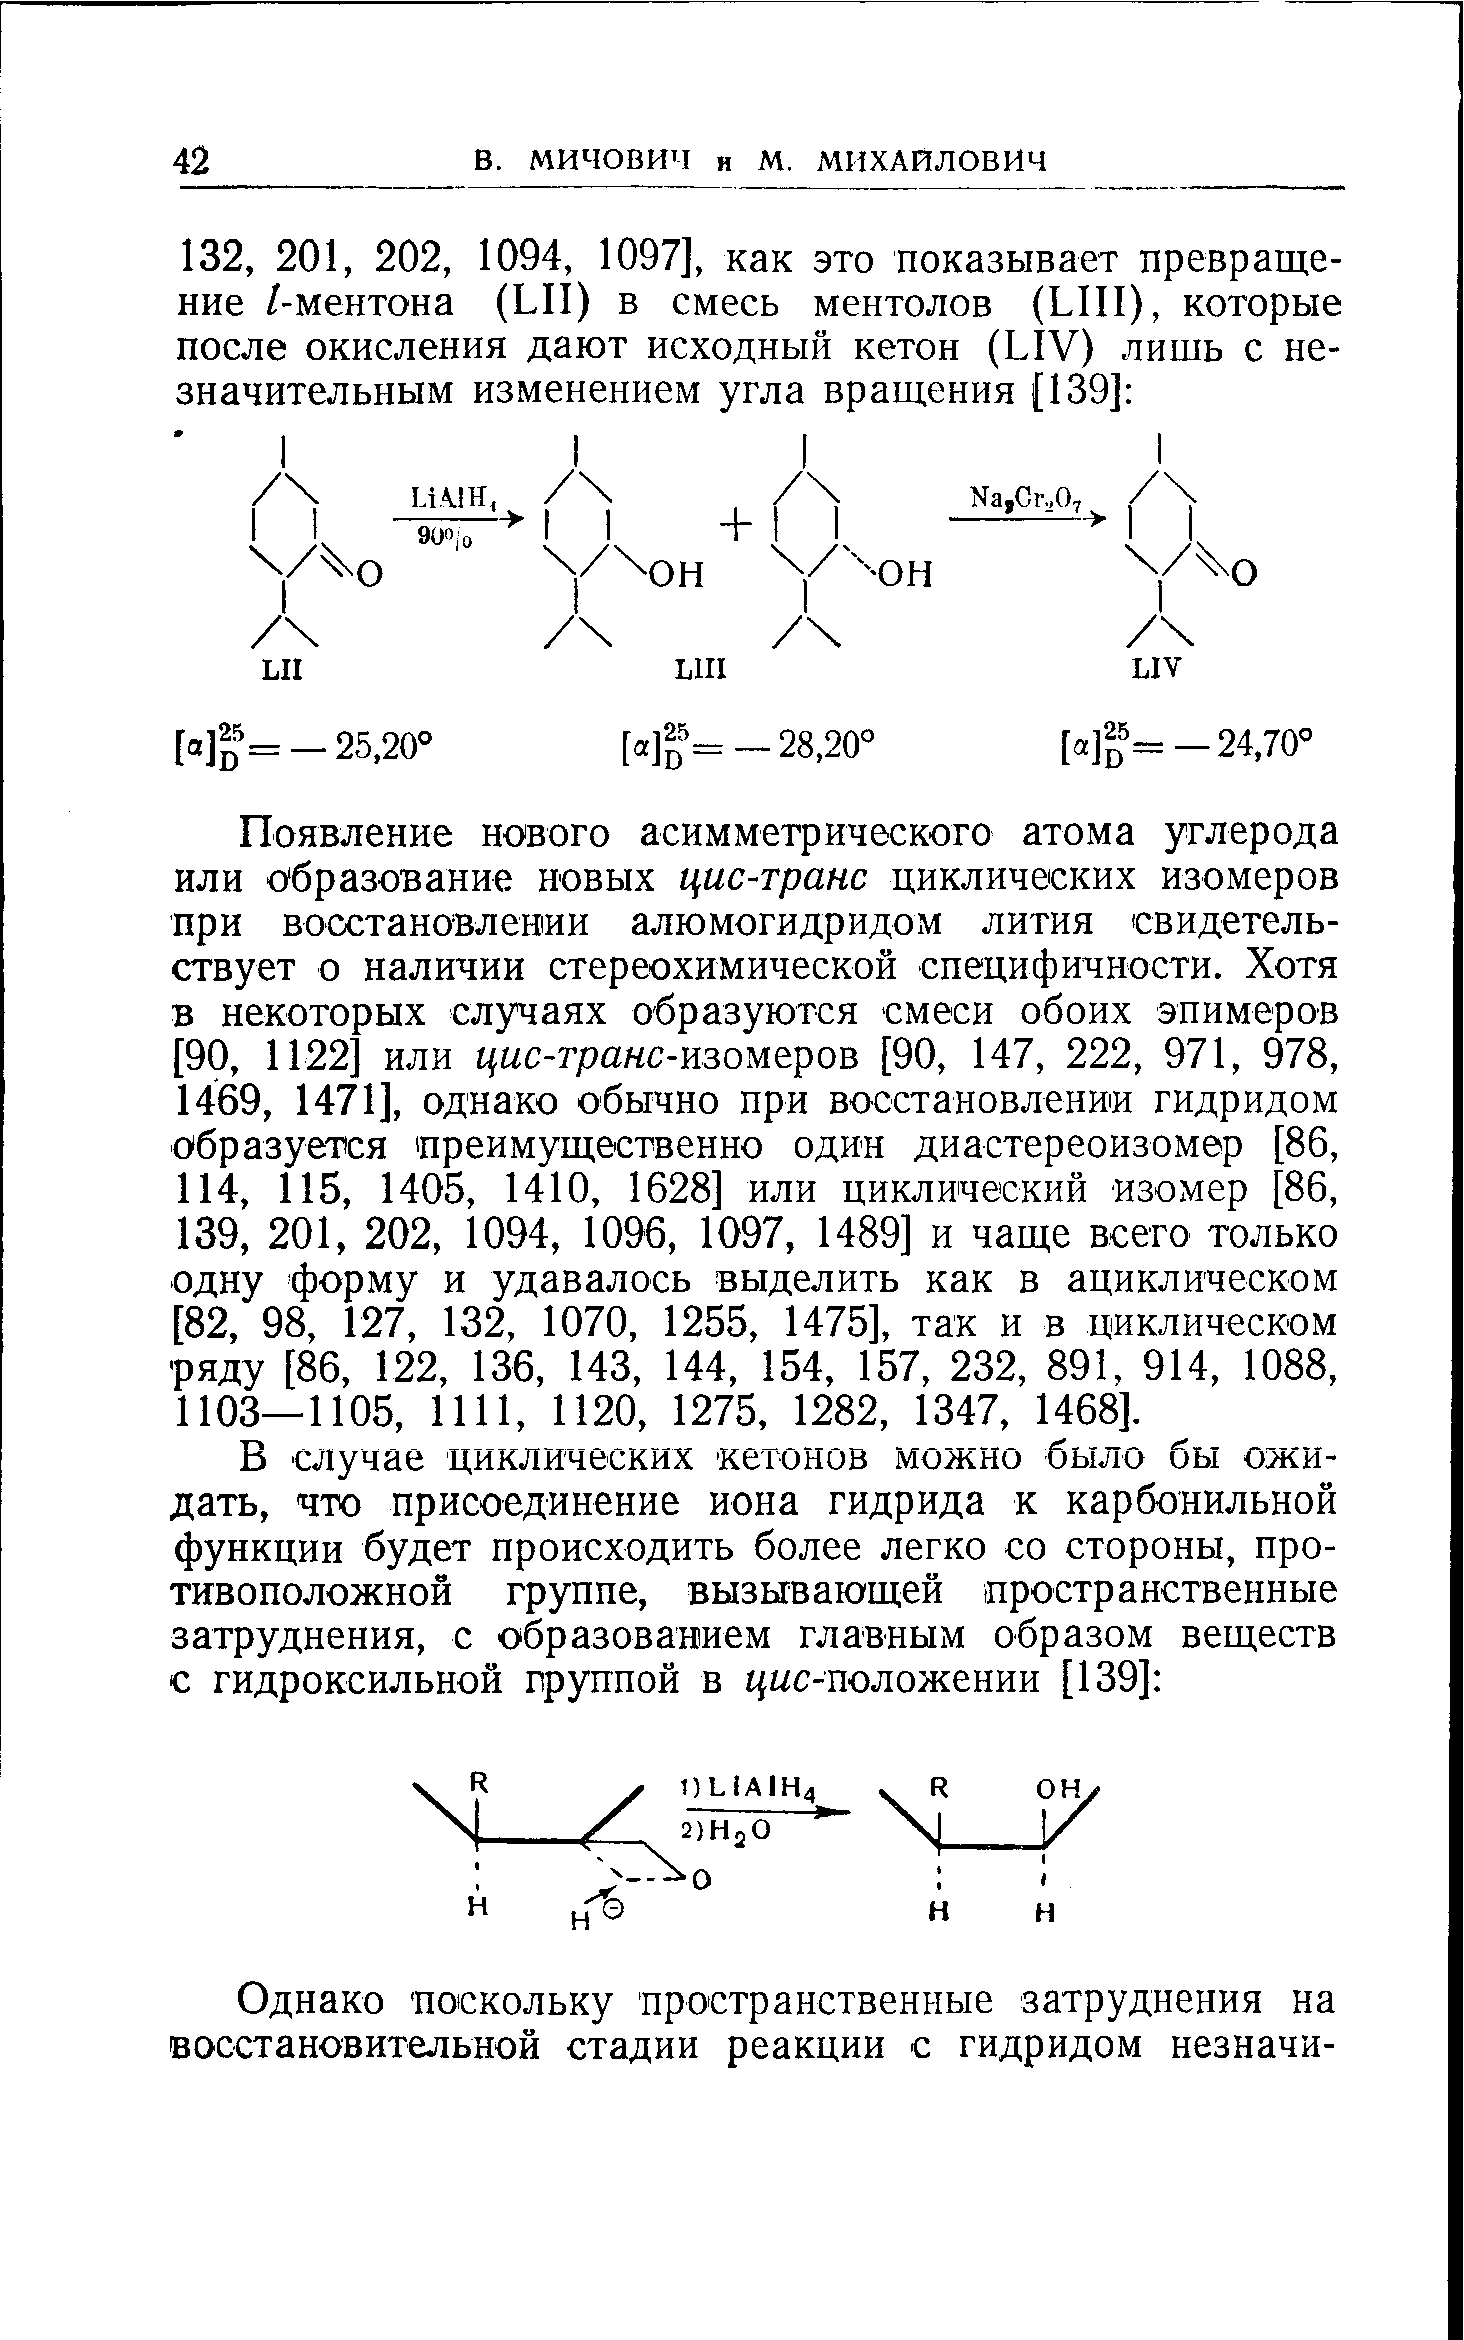 Появление нового асимметрического атома углерода или образование новых цис-транс циклических изомеров при восстановлении алюмогидридом лития свидетельствует о наличии стереохимической специфичности. Хотя в некоторых случаях образуются смеси обоих эпимеров [90, 1122 или цис-транс-кзом ров [90, 147, 222, 971, 978, 1469, 1471], однако обычно при восстановлении гидридом образуется преимущественно один диастереоизомер [86, 114, 115, 1405, 1410, 1628] или циклический изомер [86, 139, 201, 202, 1094, 1096, 1097, 1489] и чаще всего только одну форму и удавалось выделить как в ациклическом [82, 98, 127, 132, 1070, 1255, 1475], так и в циклическом ряду [86, 122, 136, 143, 144, 154, 157, 232, 891, 914, 1088, 1103—1105, 1111, 1120, 1275, 1282, 1347, 1468].